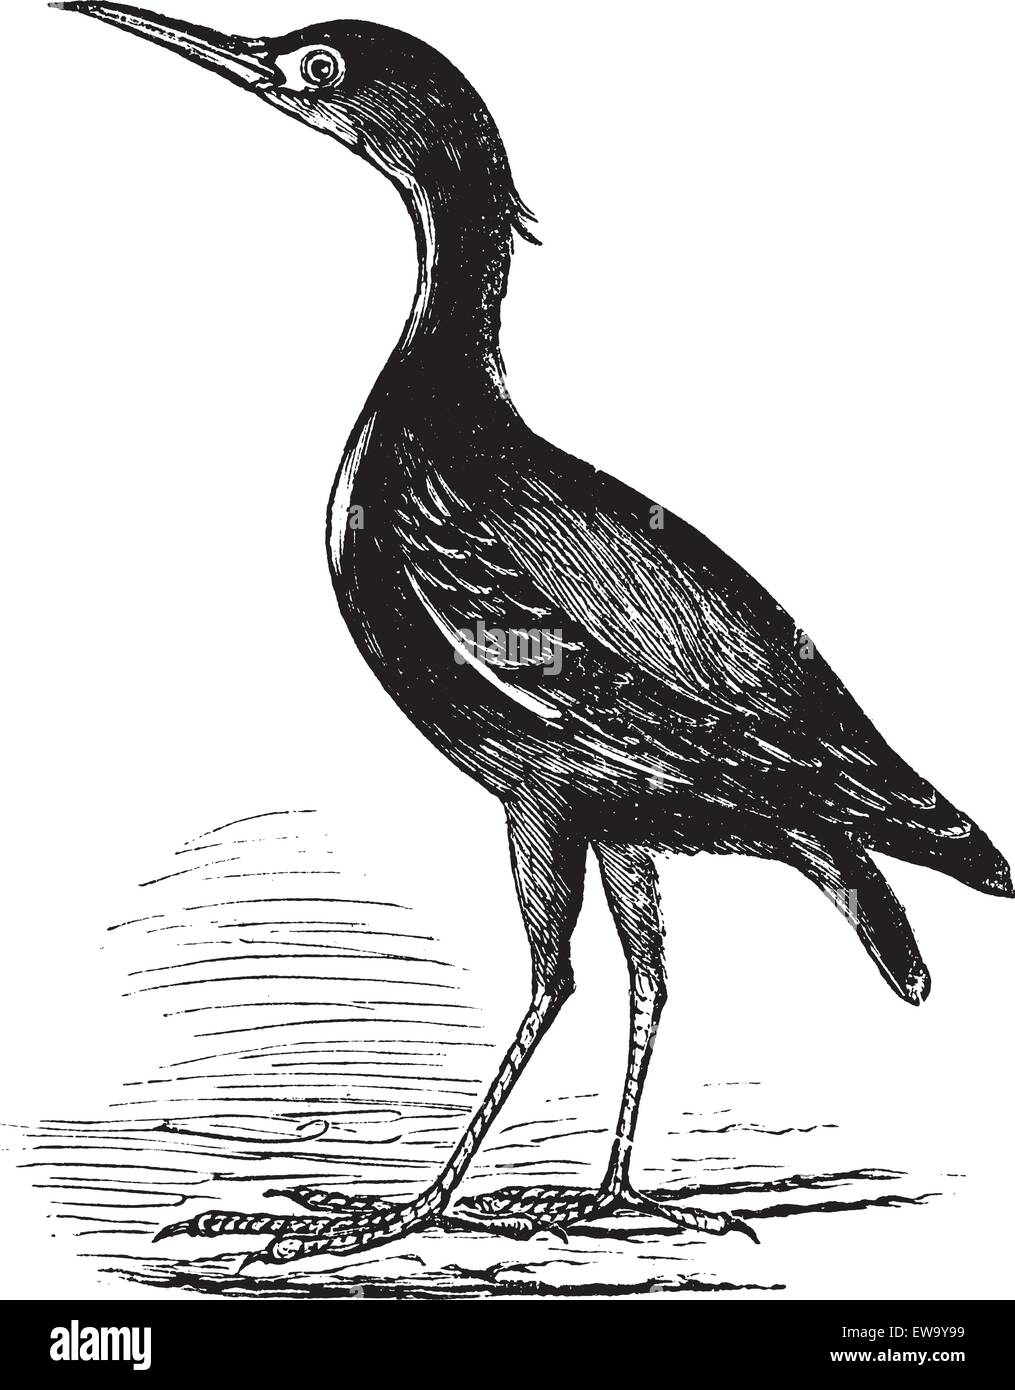 Eurasische Rohrdommel auch bekannt als Botaurus Stellaris, Vogel, graviert Vintage Illustration des eurasischen Rohrdommel, Vogel. Stock Vektor